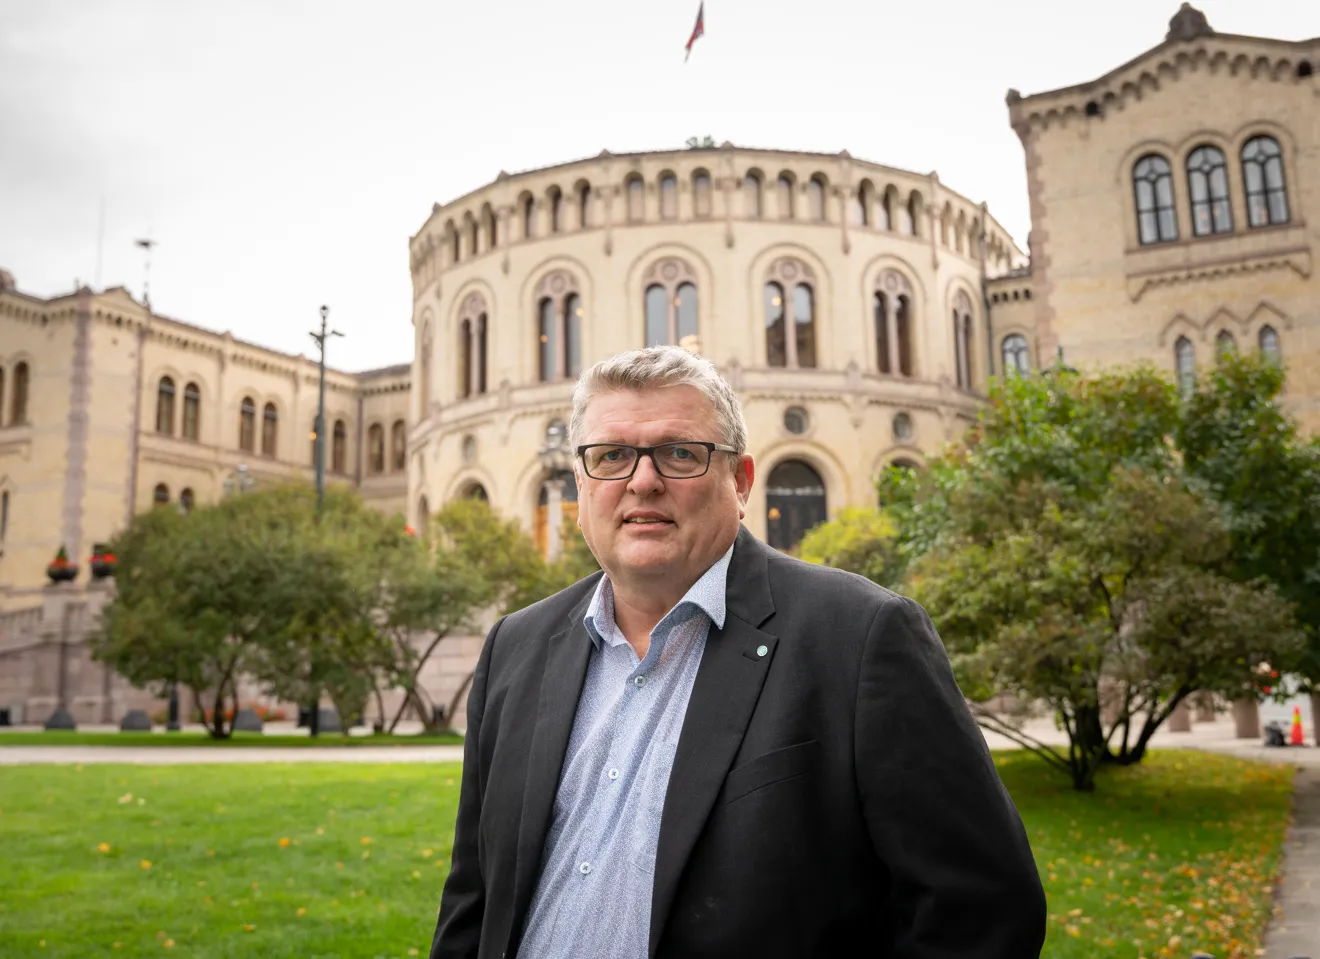 Lars Olav Grøvik foran Stortinget med seriøs blikk